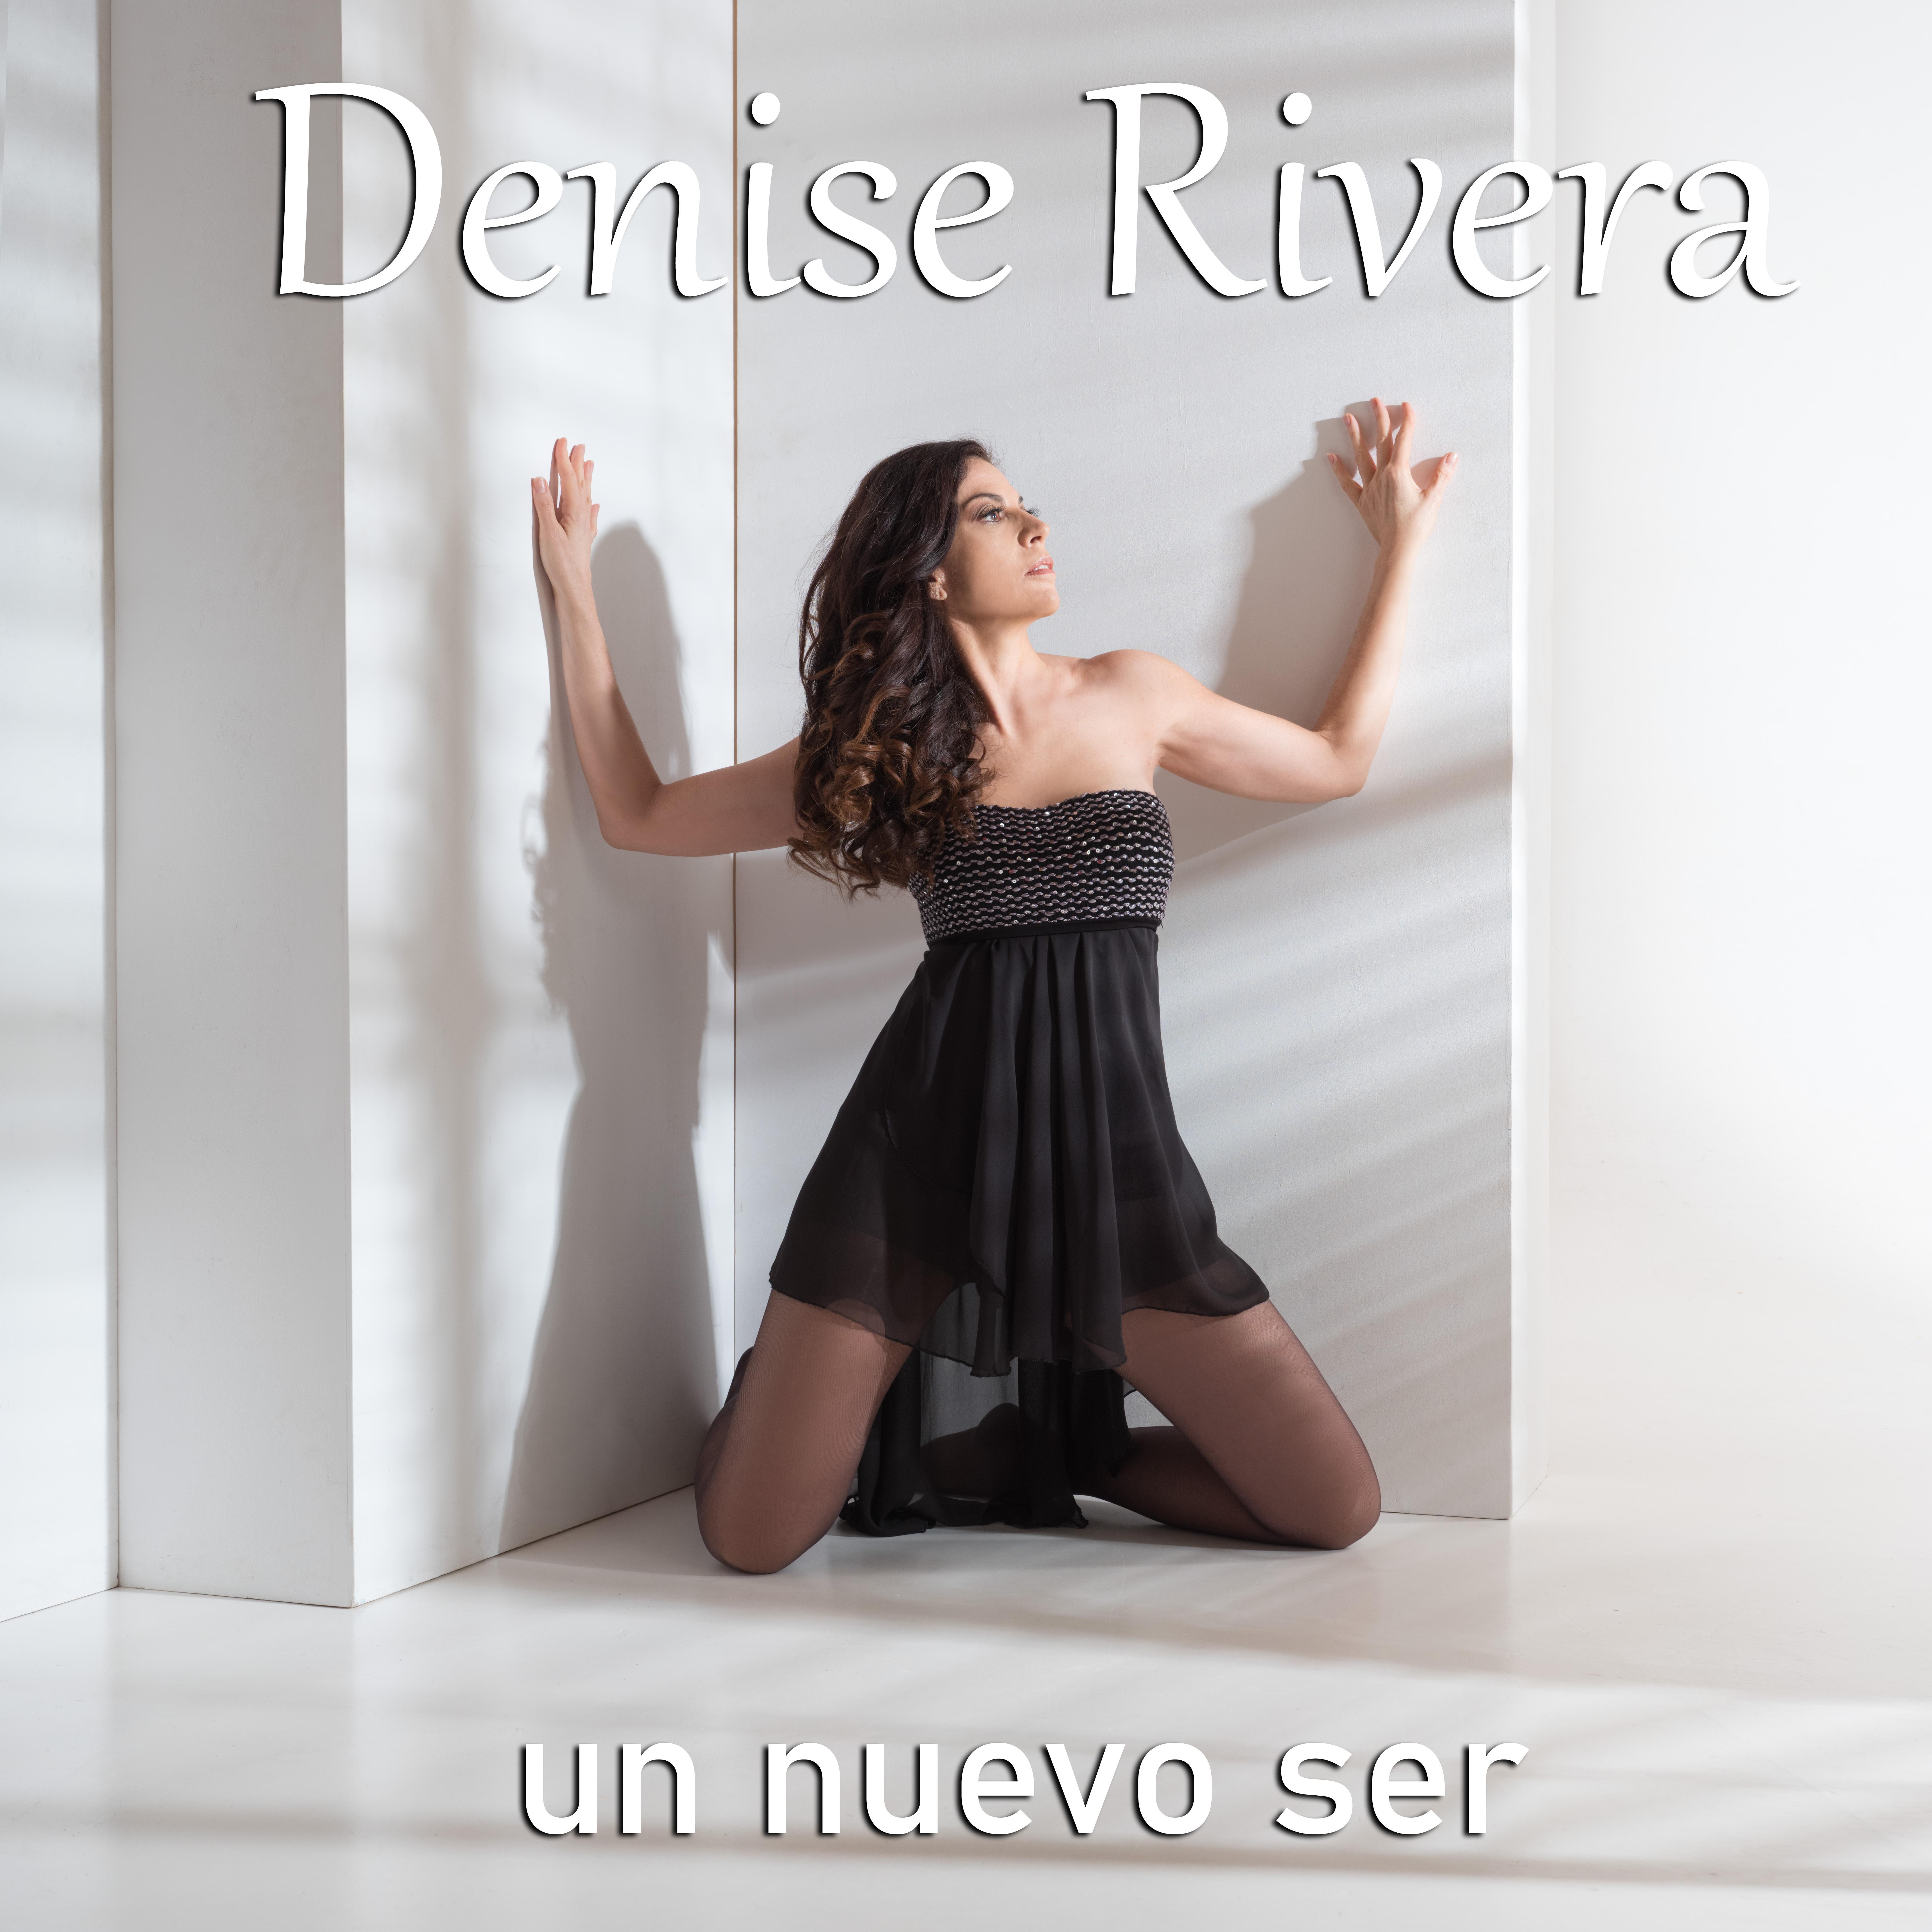 Denise Rivera - Flor de lis